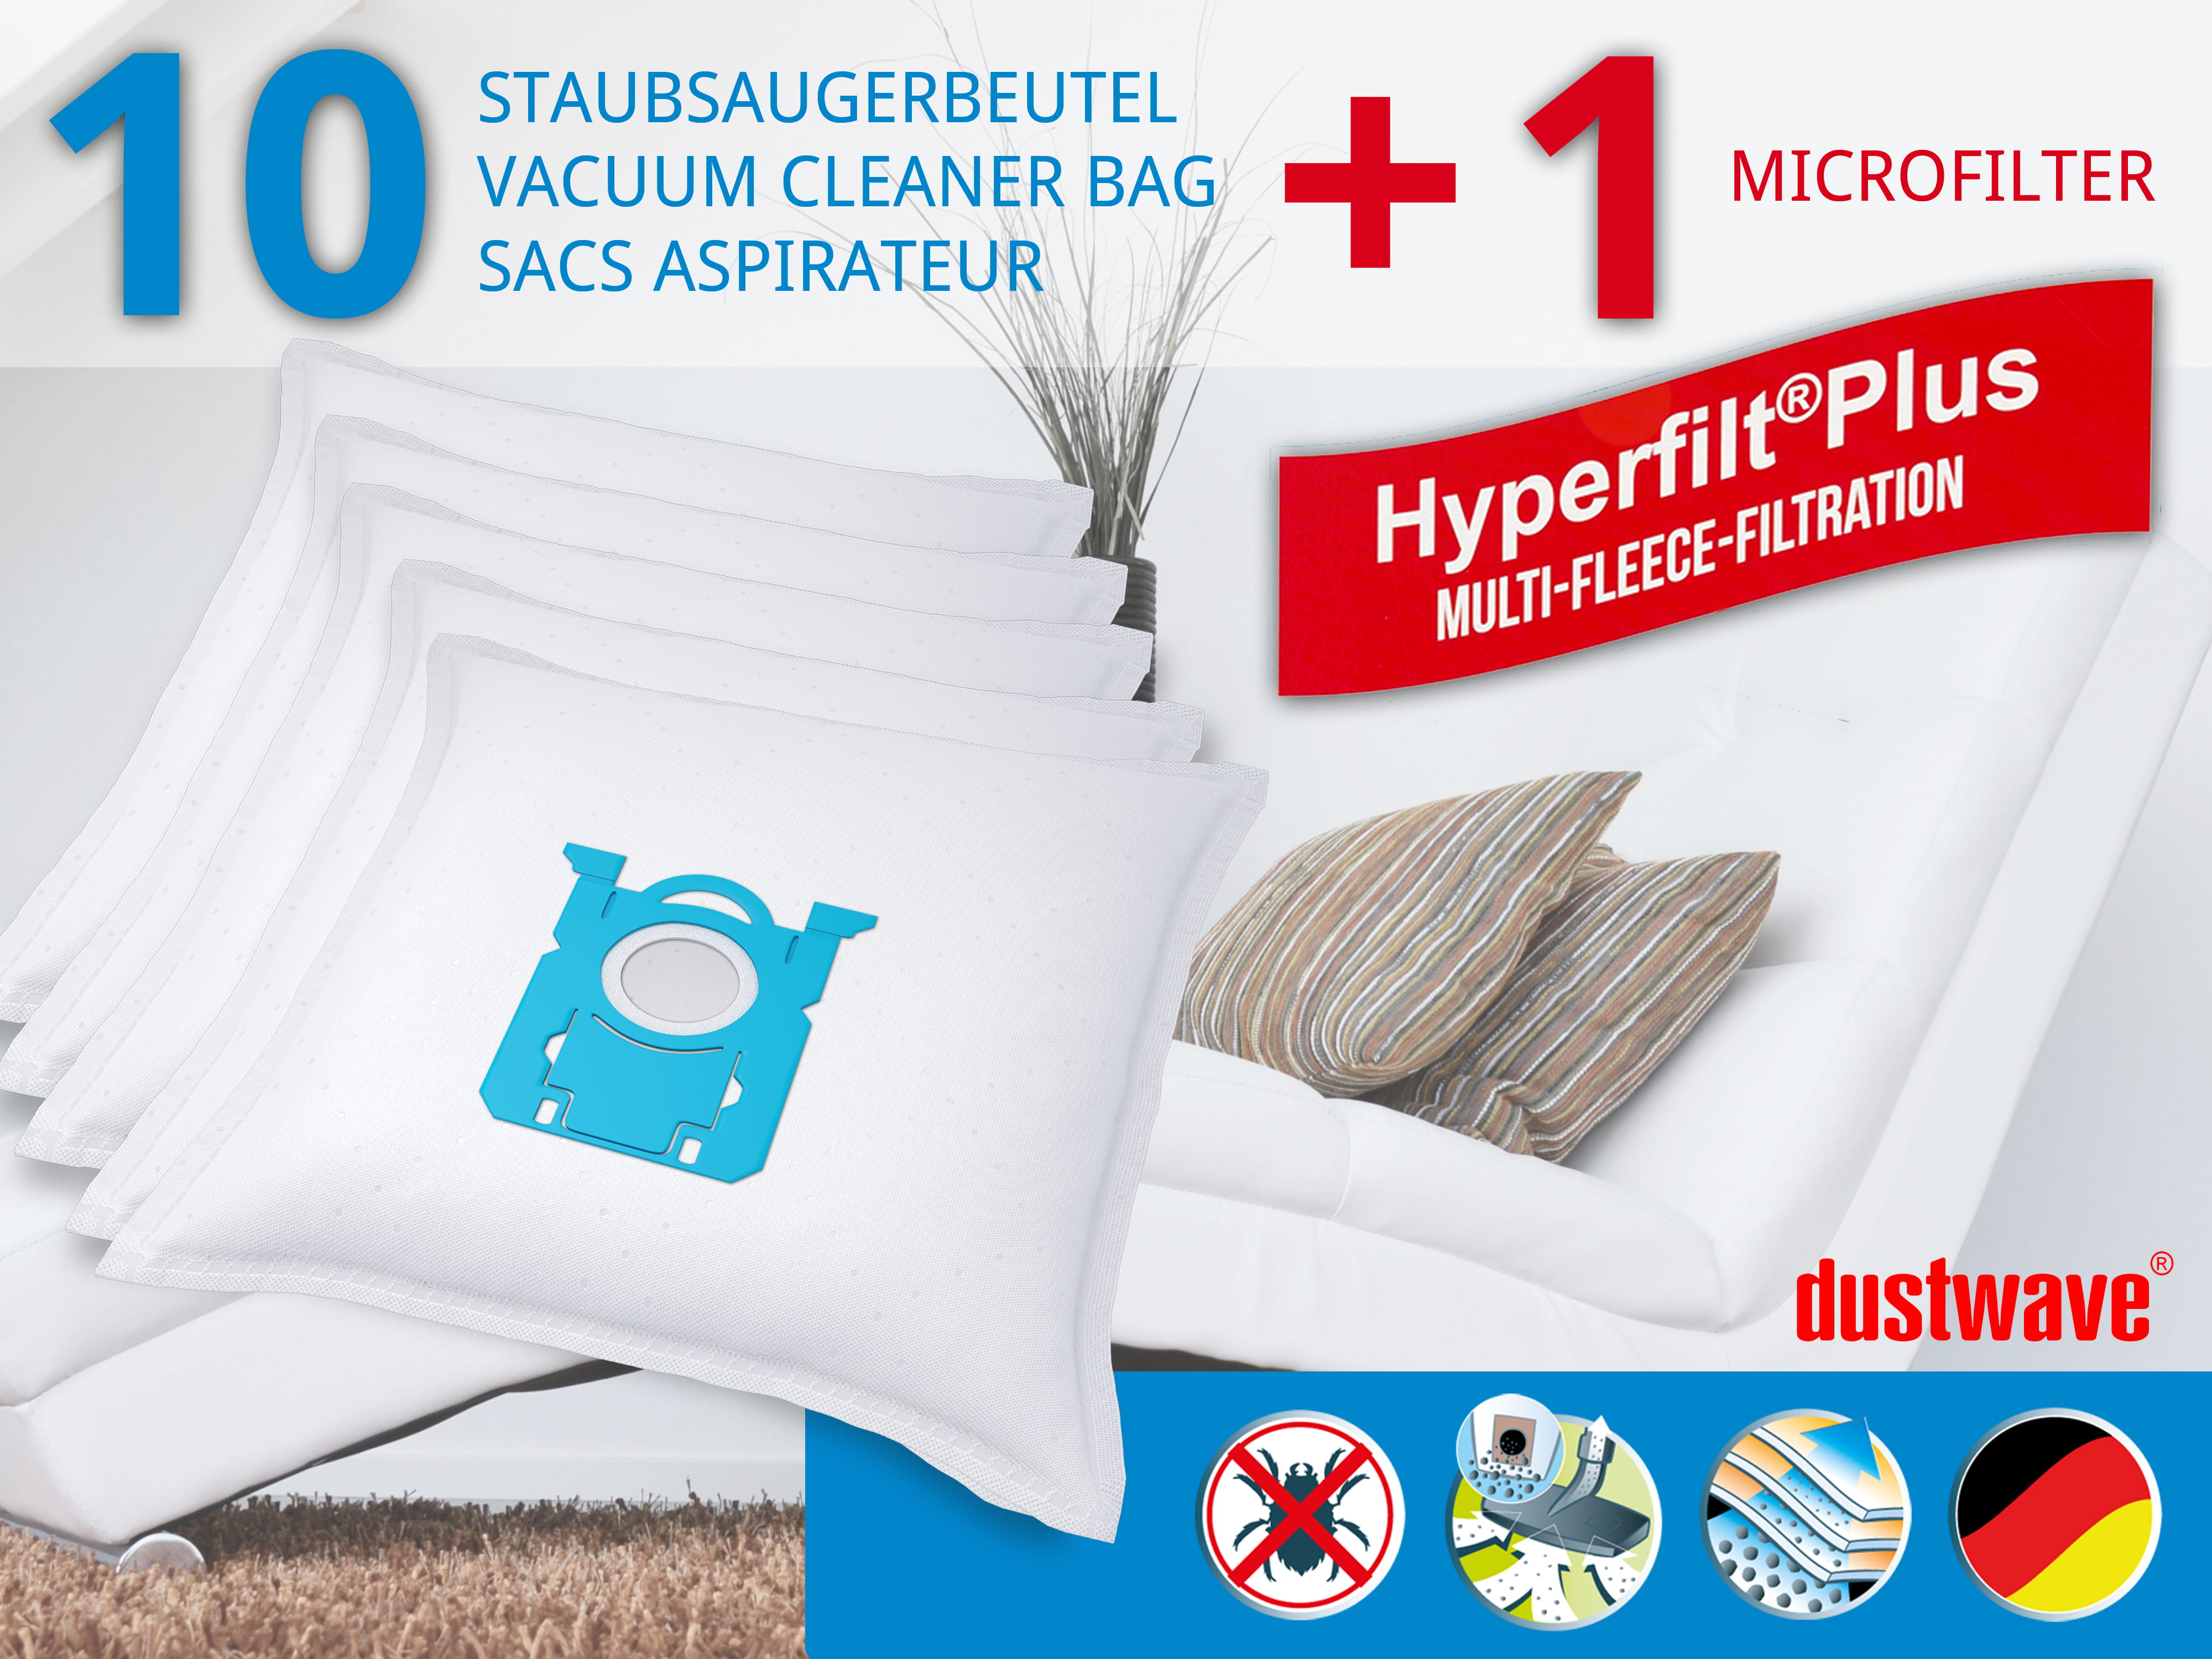 Dustwave® 10 Staubsaugerbeutel für AEG VX6-1-IW-A - hocheffizient, mehrlagiges Mikrovlies mit Hygieneverschluss - Made in Germany